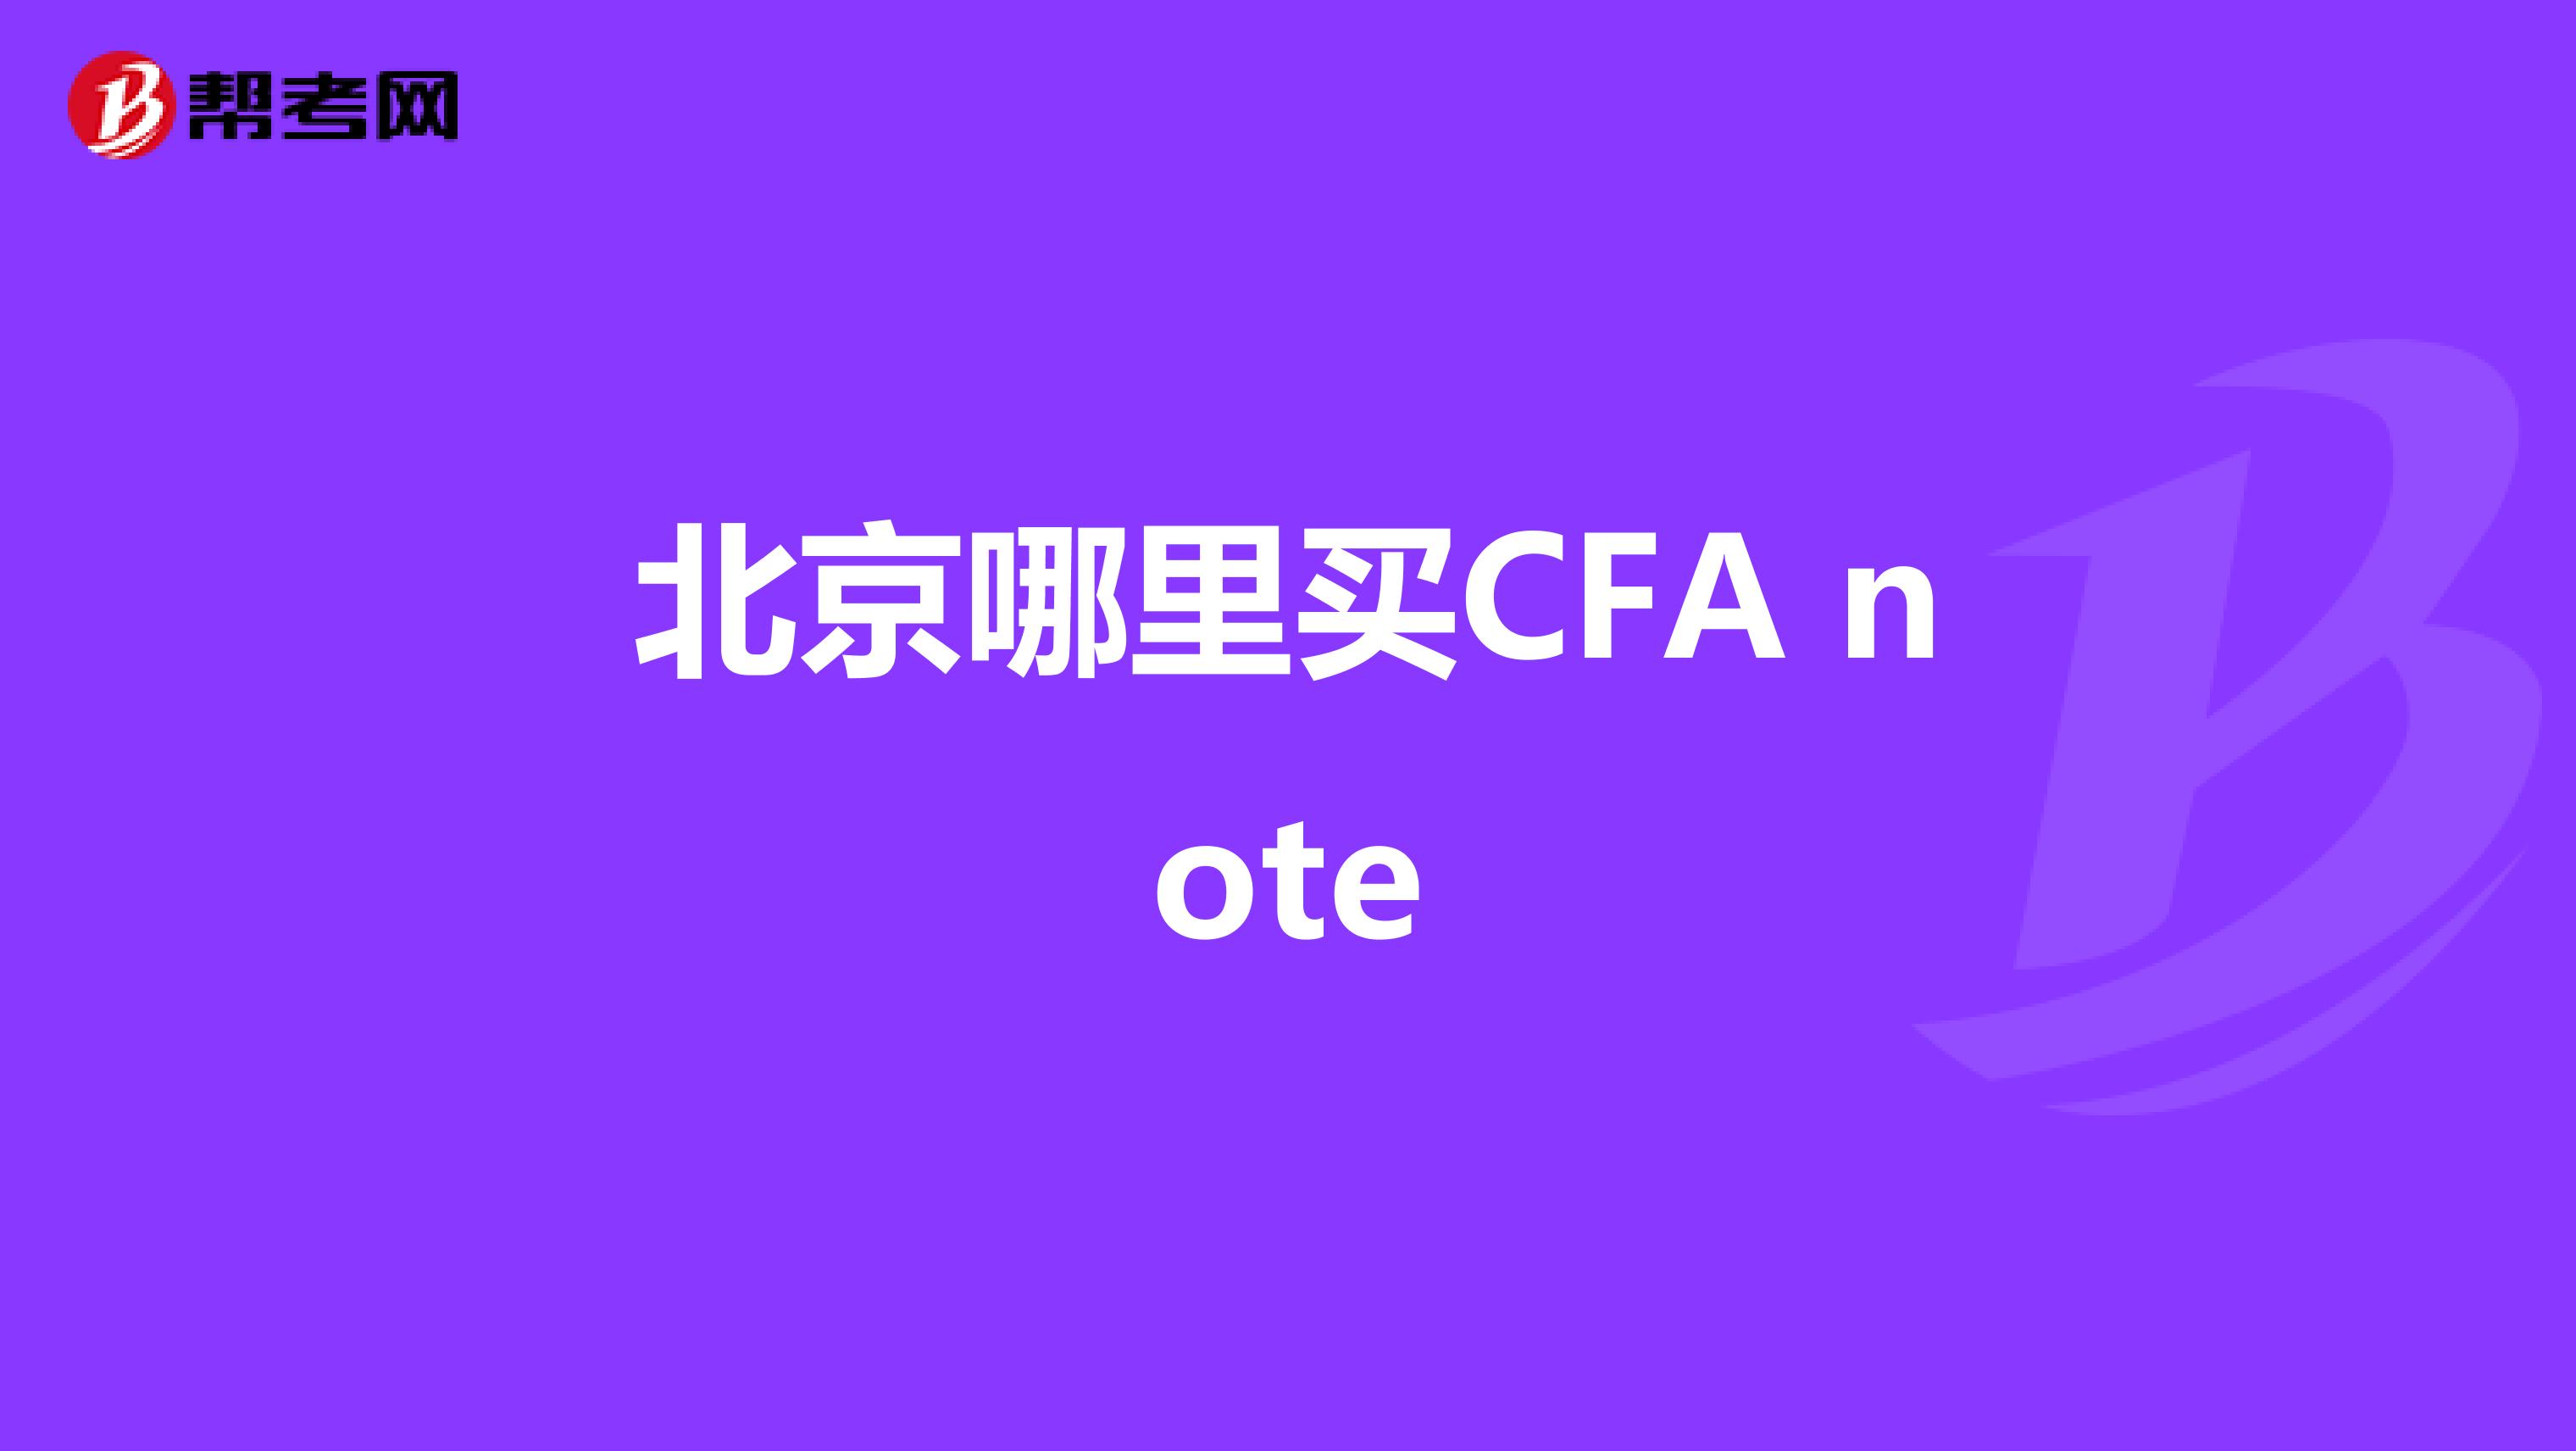 北京哪里买CFA note